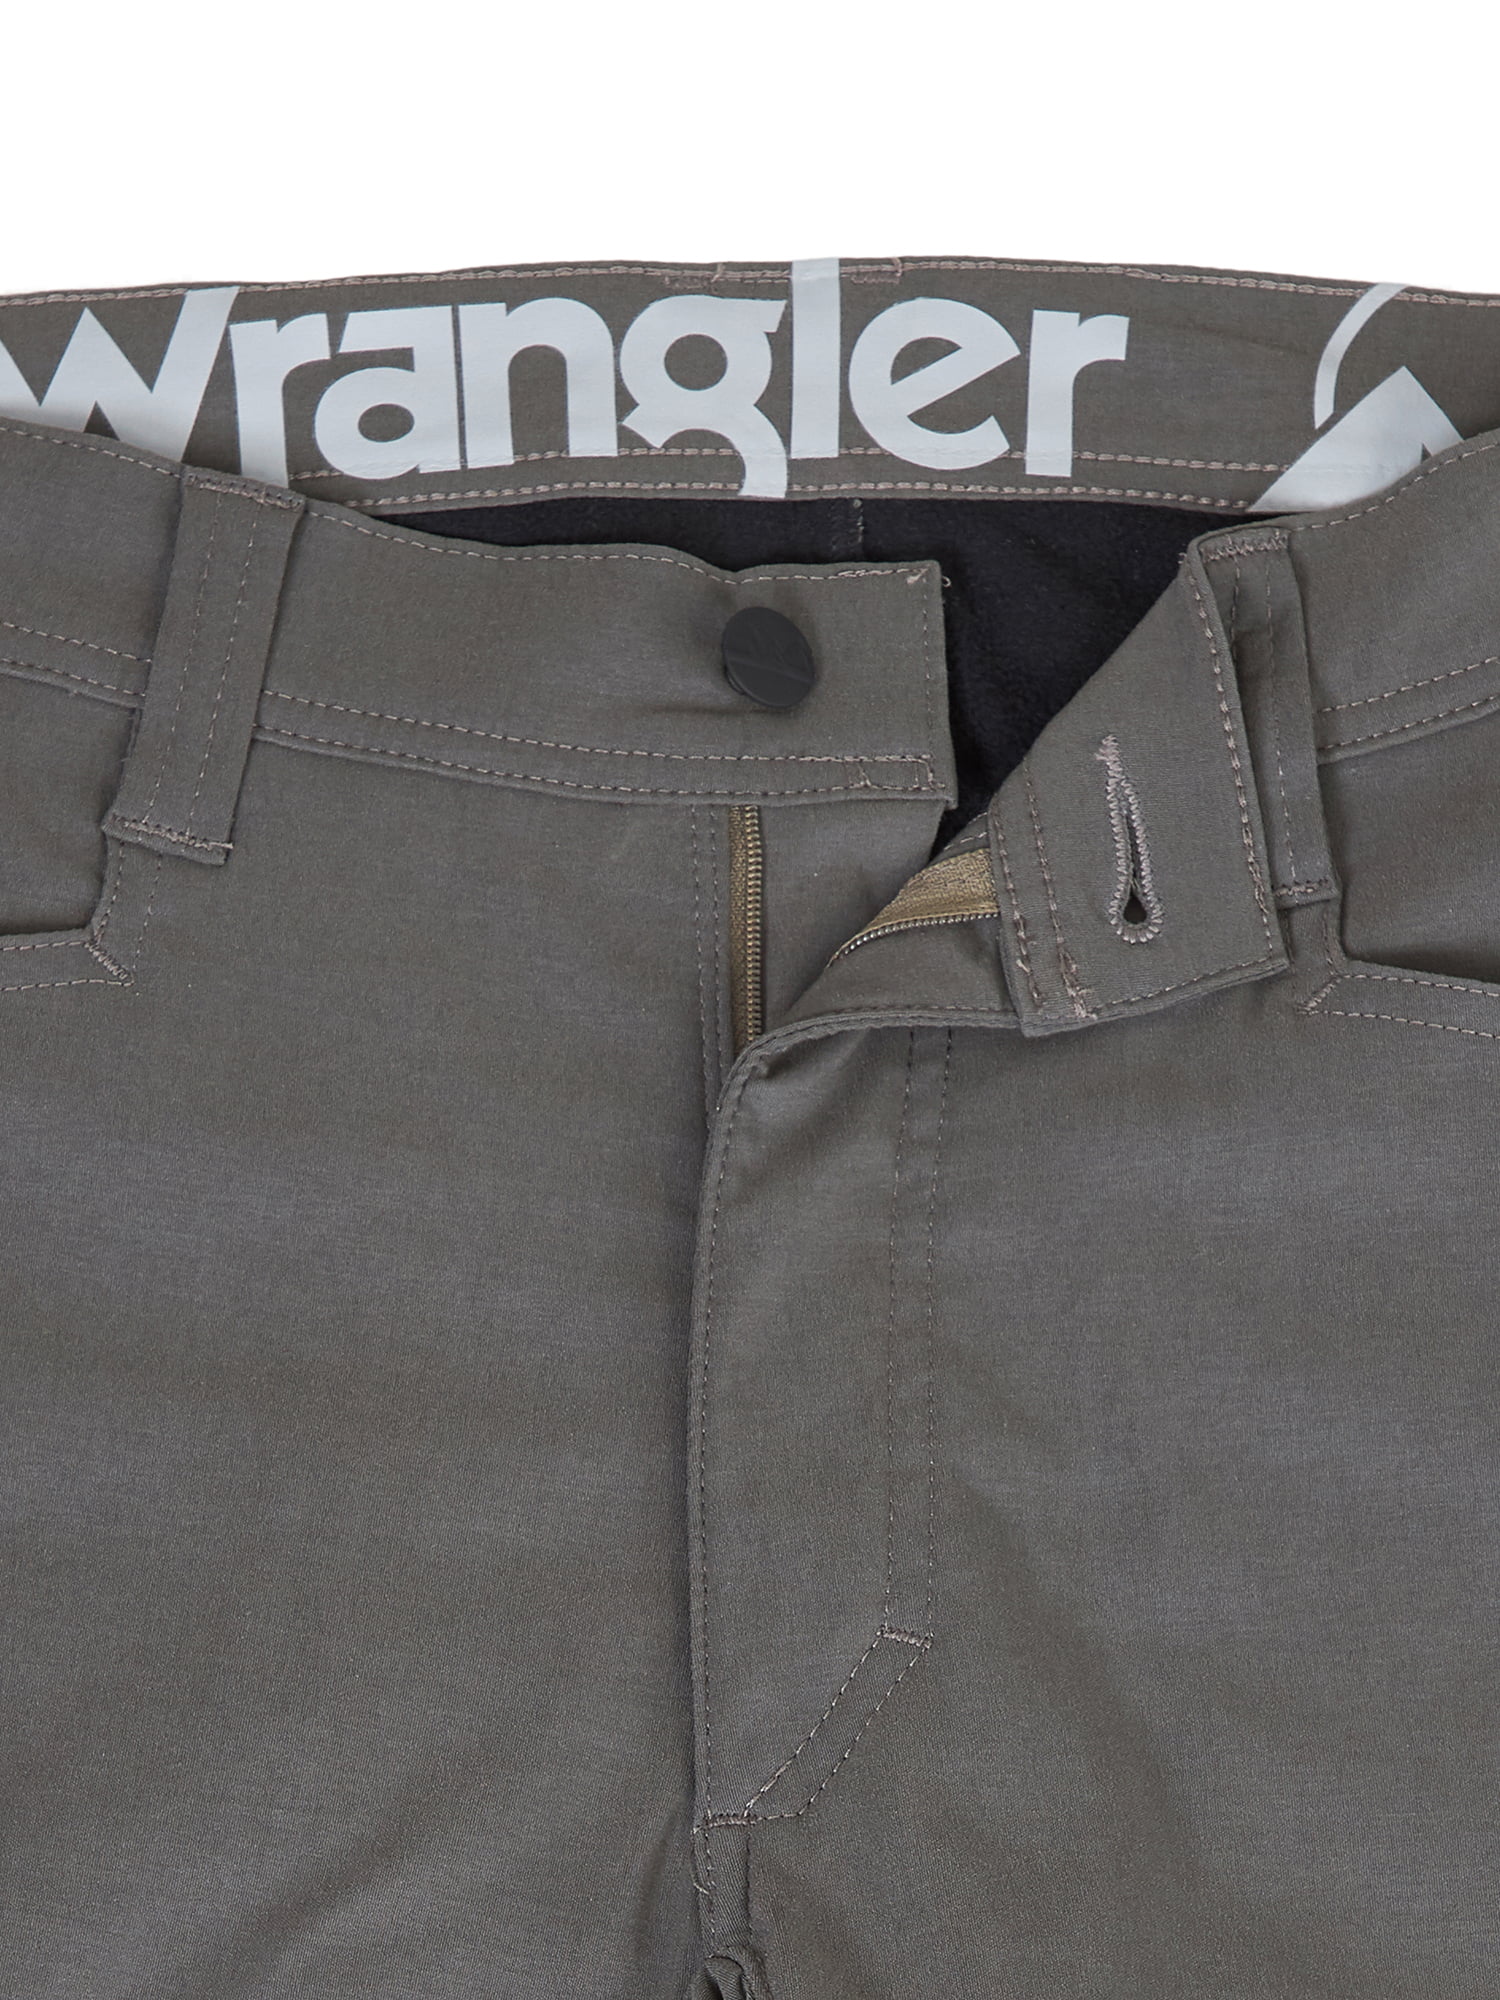 Wrangler Men's Outdoor Fleece Lined Pant 